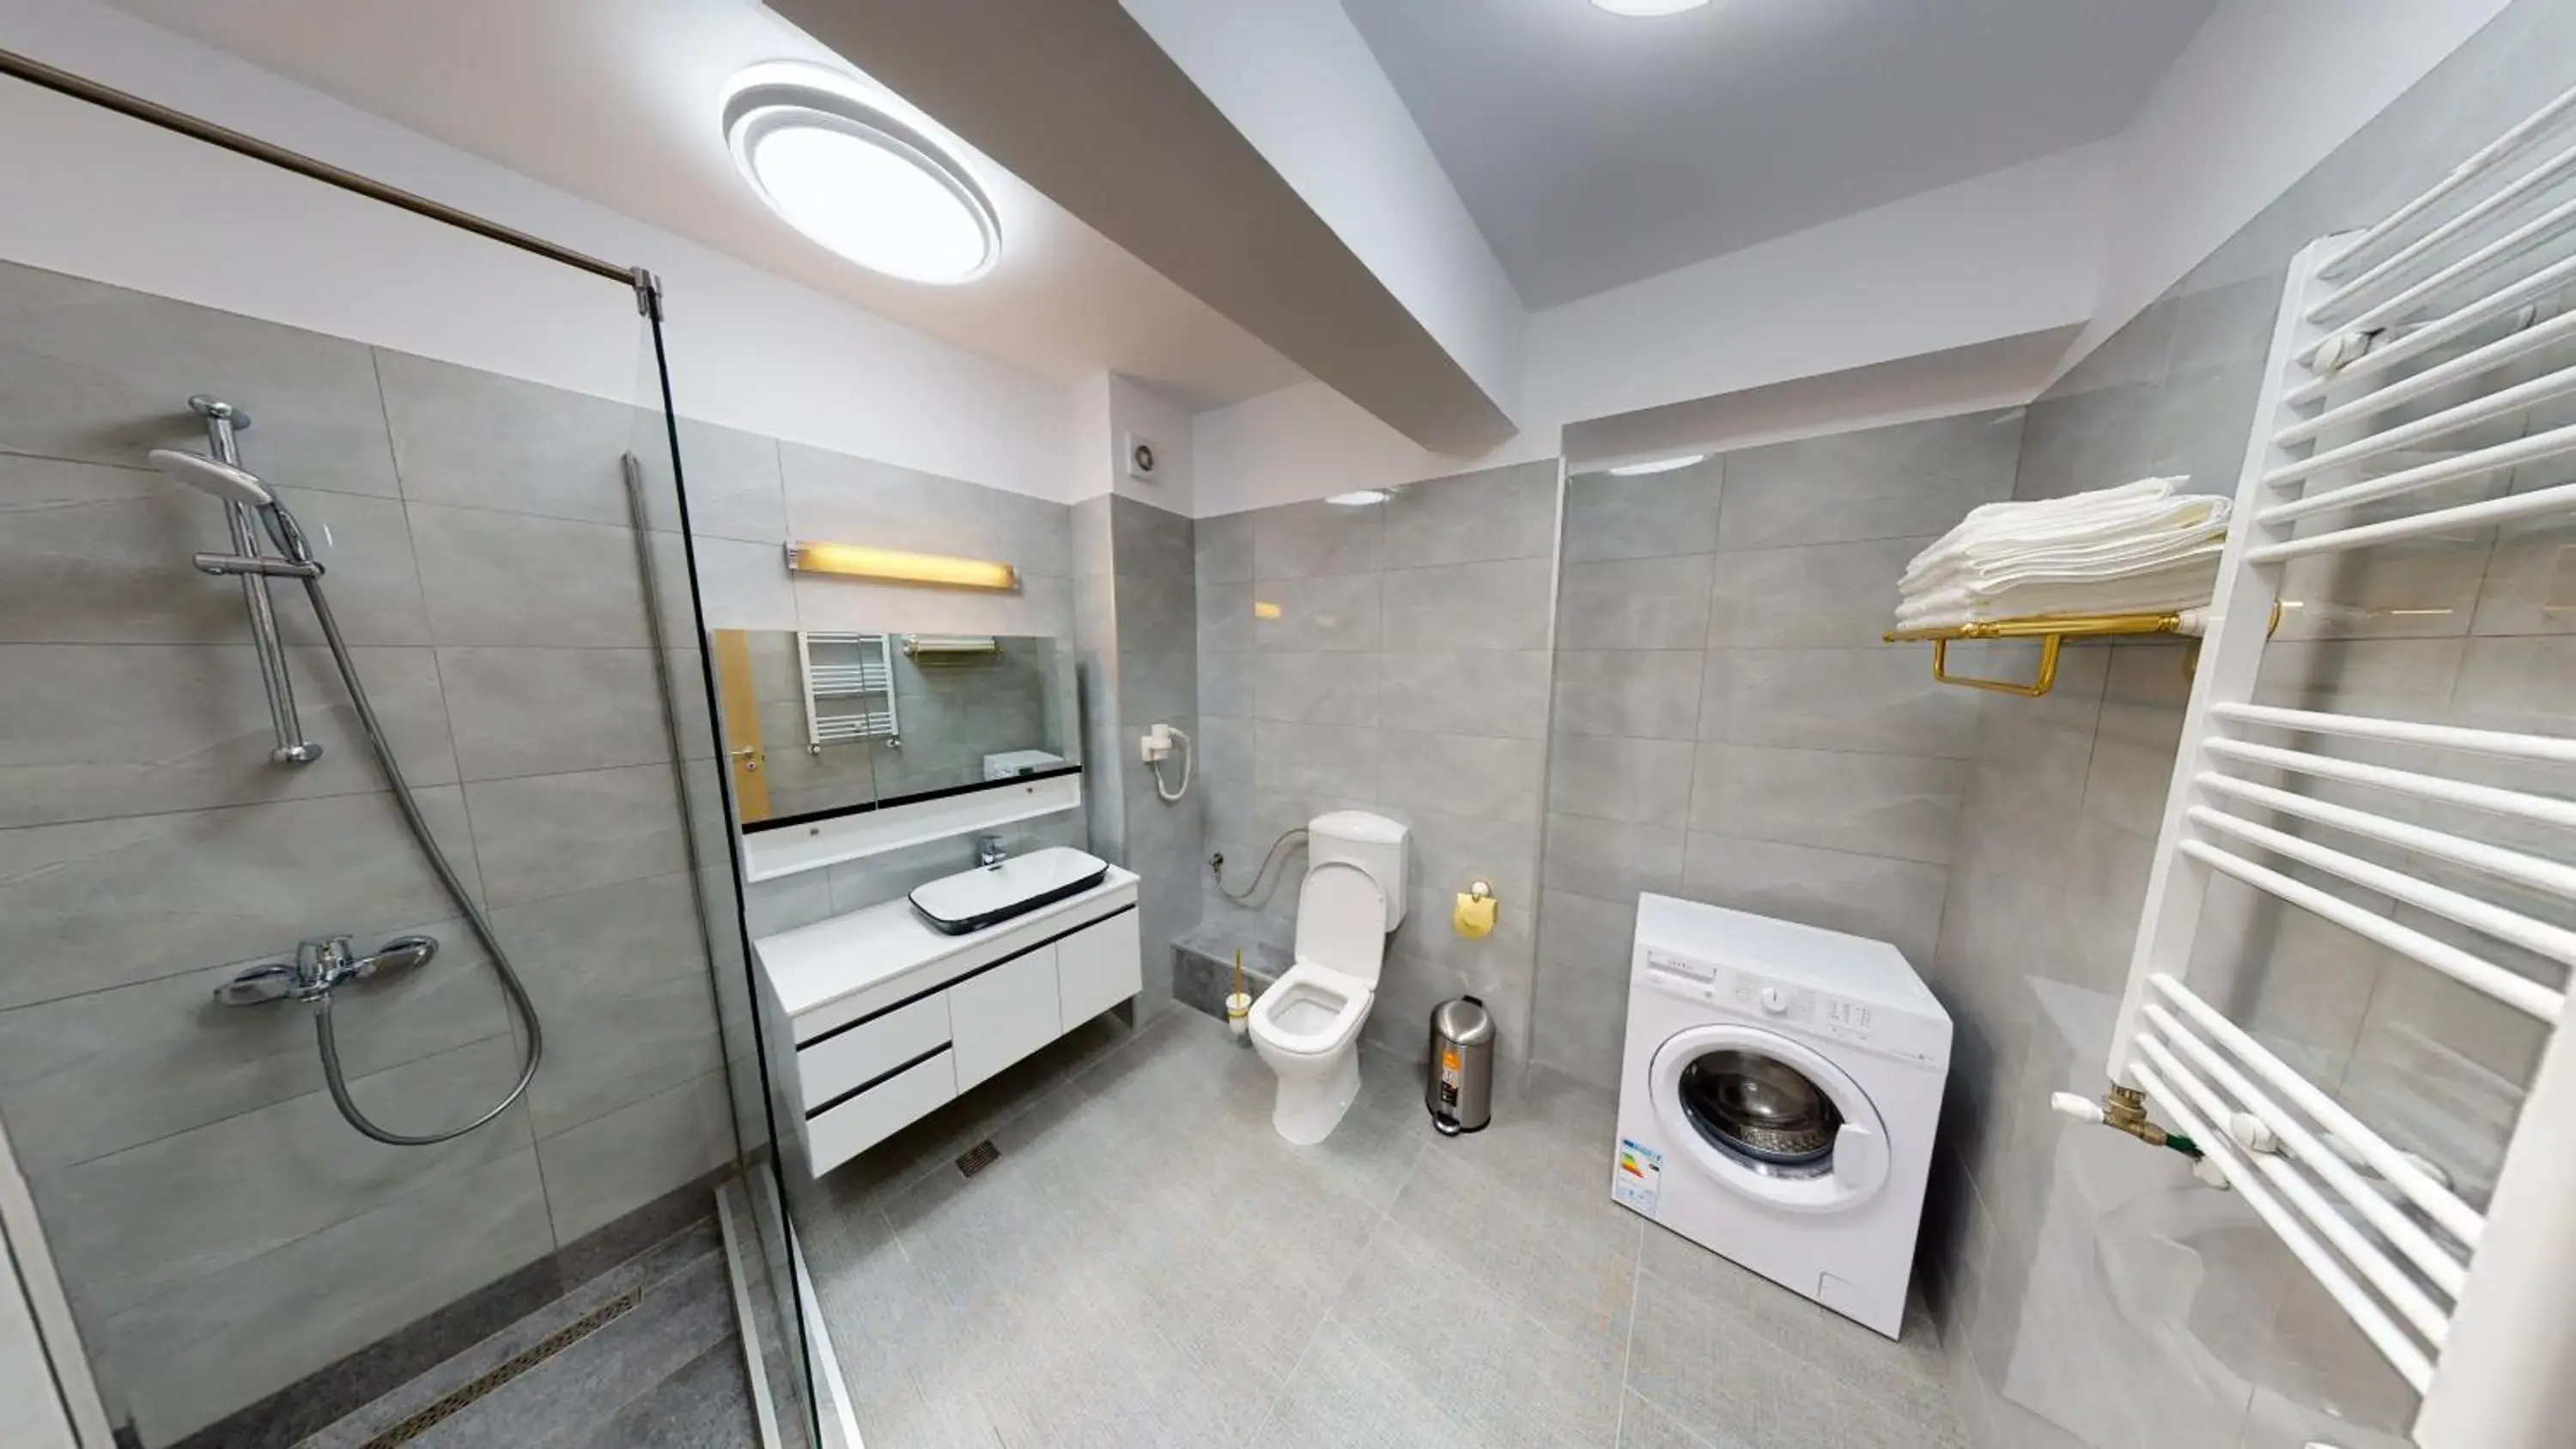 Shower, Bathroom in Le Blanc ApartHotel